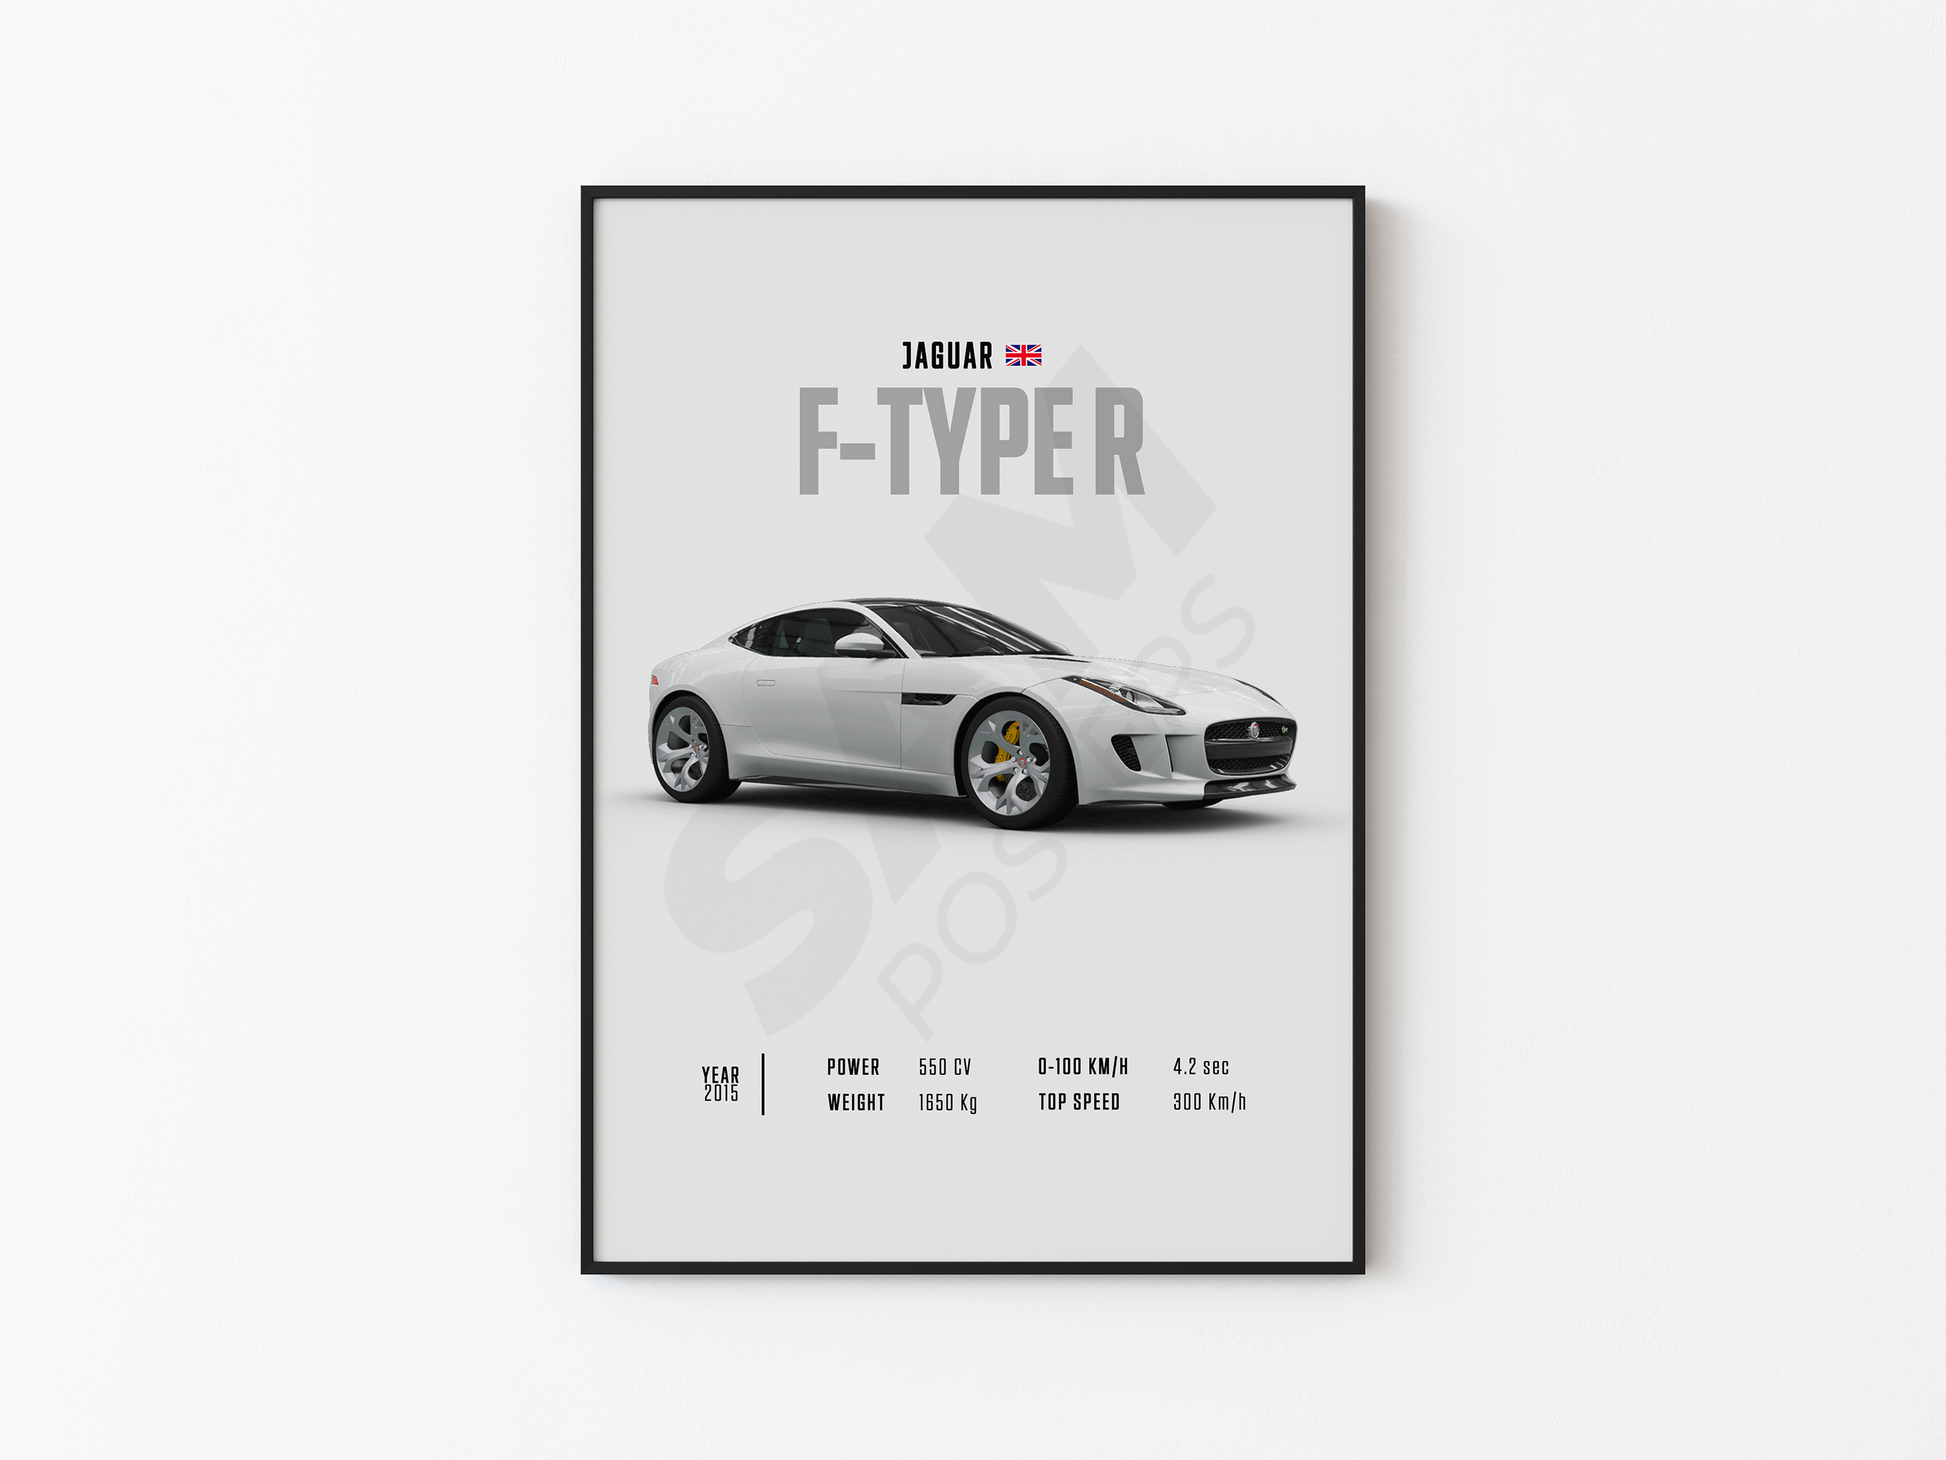 Jaguar F-Type R Poster